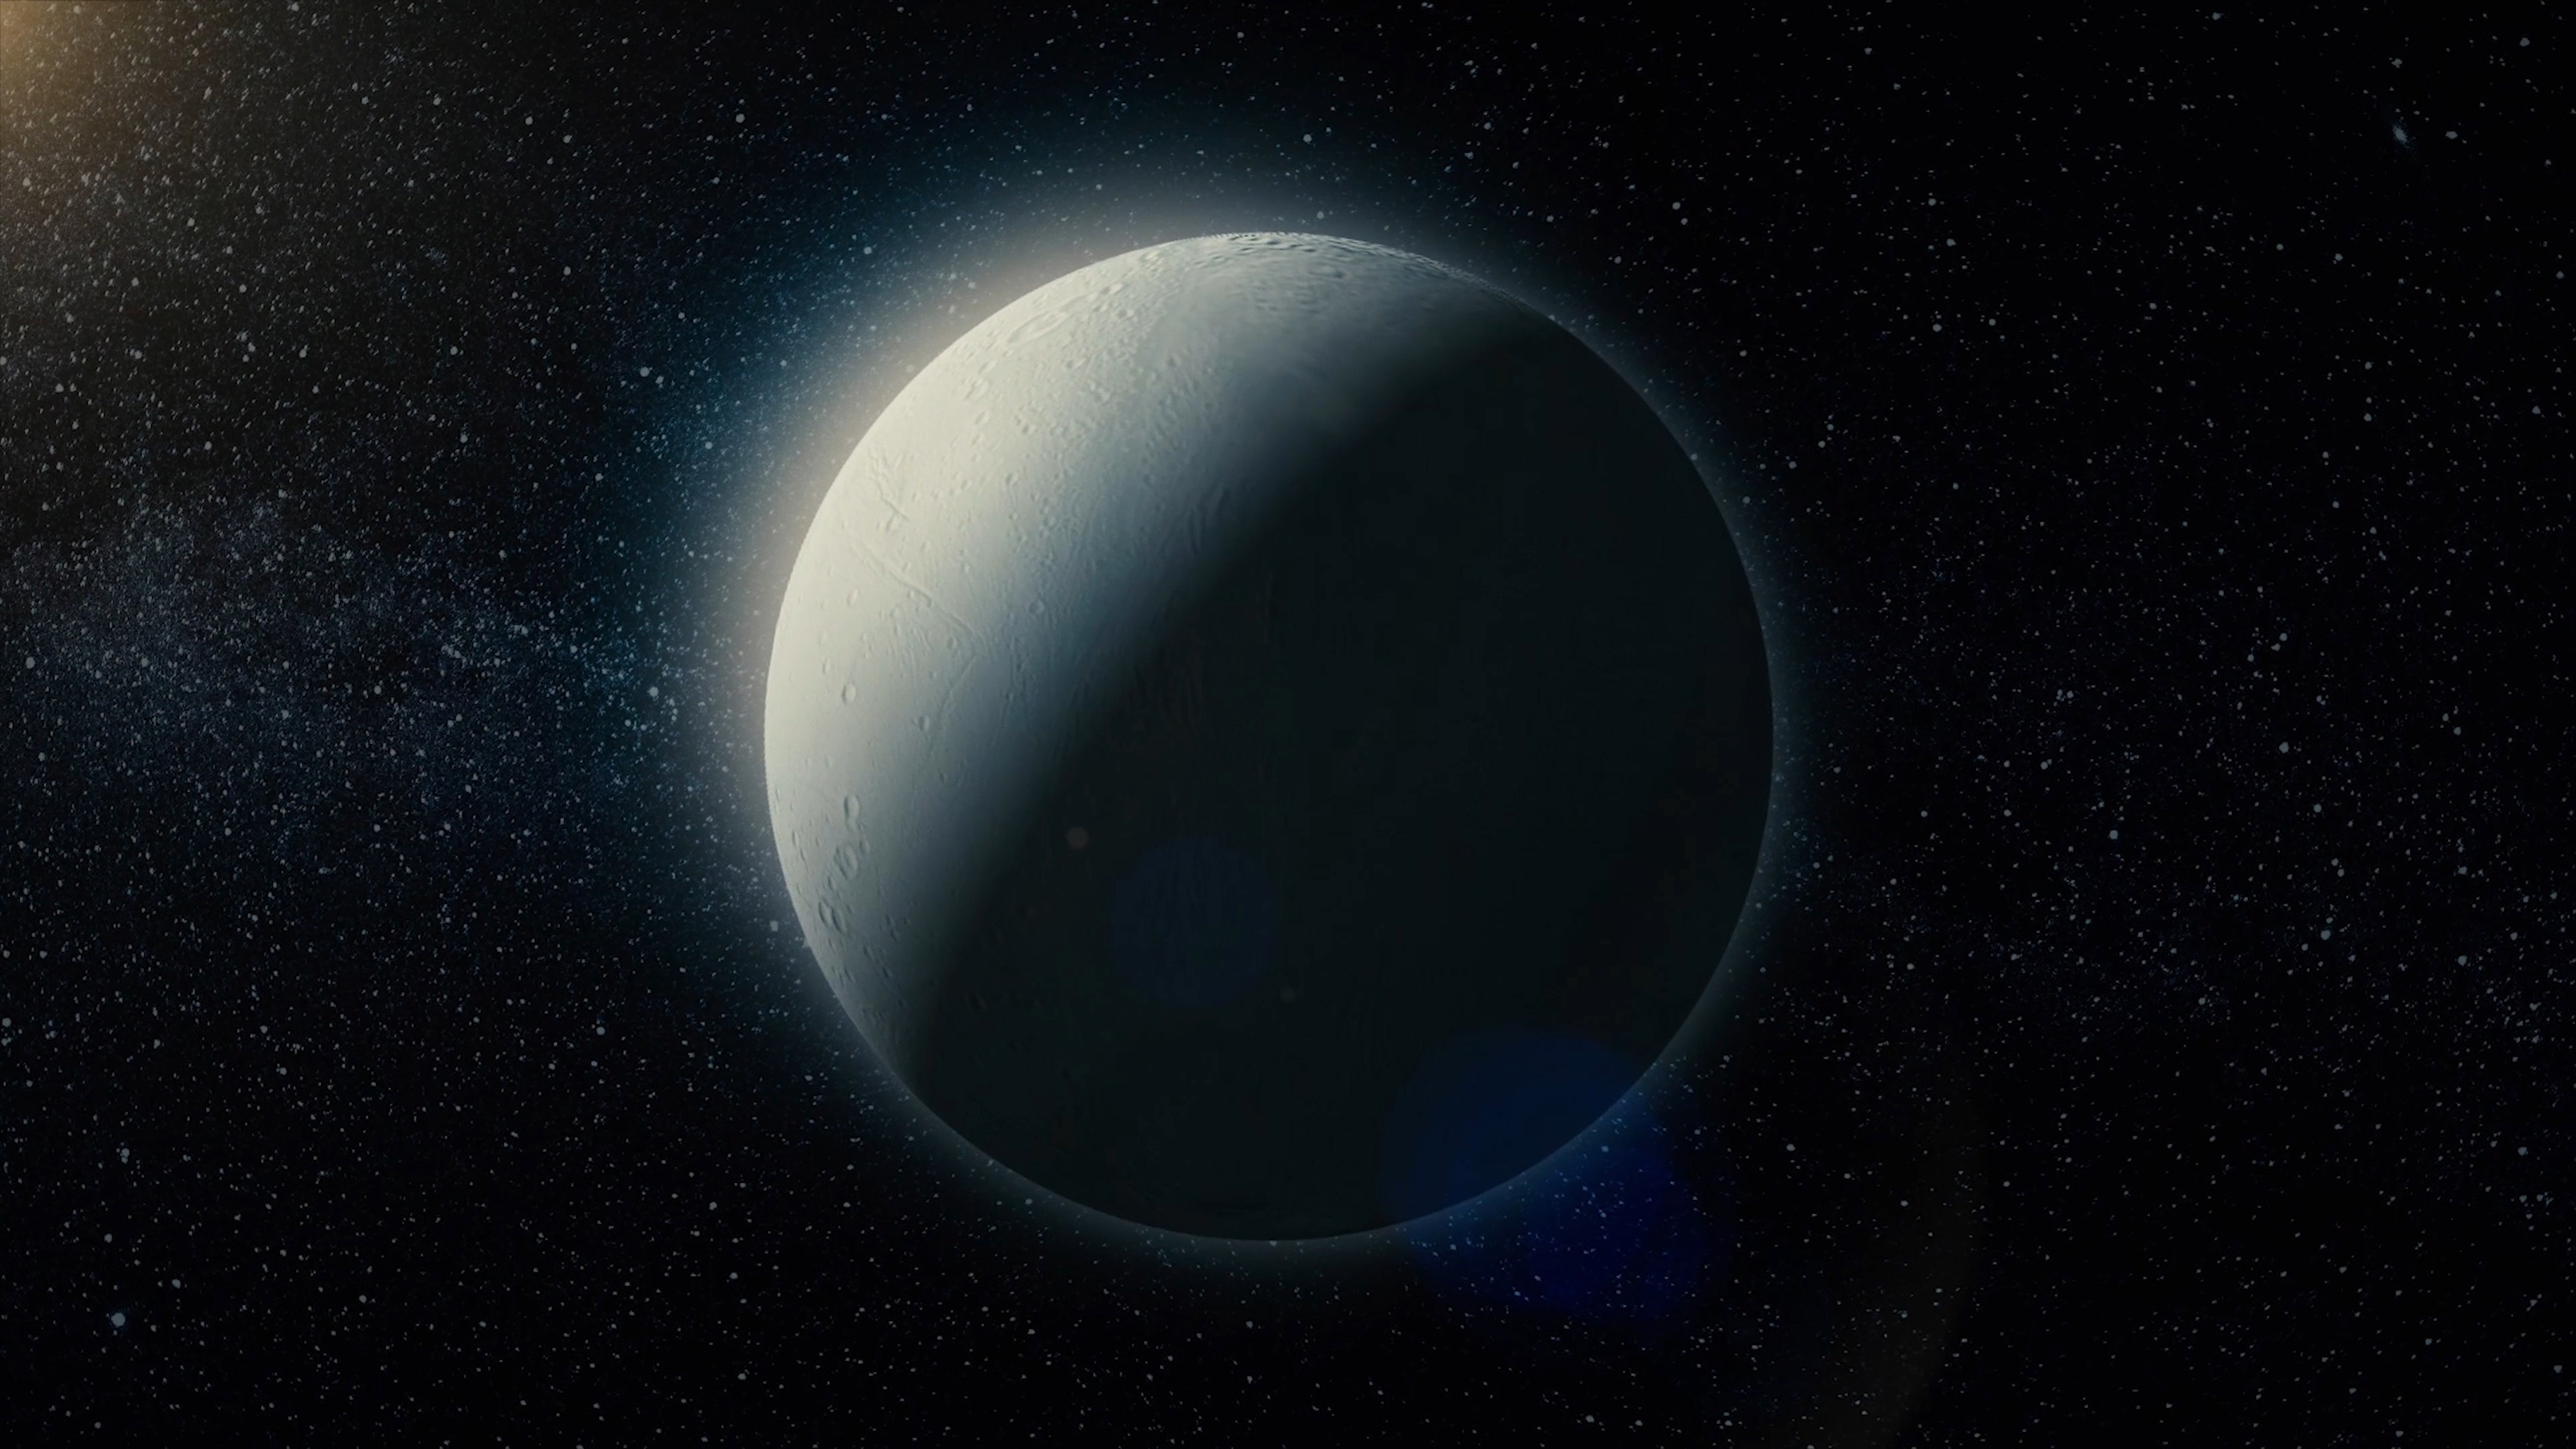 Des chercheurs affirment aujourd’hui que la quantité de méthane mesurée dans les geysers d’Encelade n’est pas explicable par les processus géochimiques connus. Elle pourrait en revanche l’être par la présence de vie dans l’océan qui couvre la lune de Saturne. © Media Whalestock, Adobe Stock